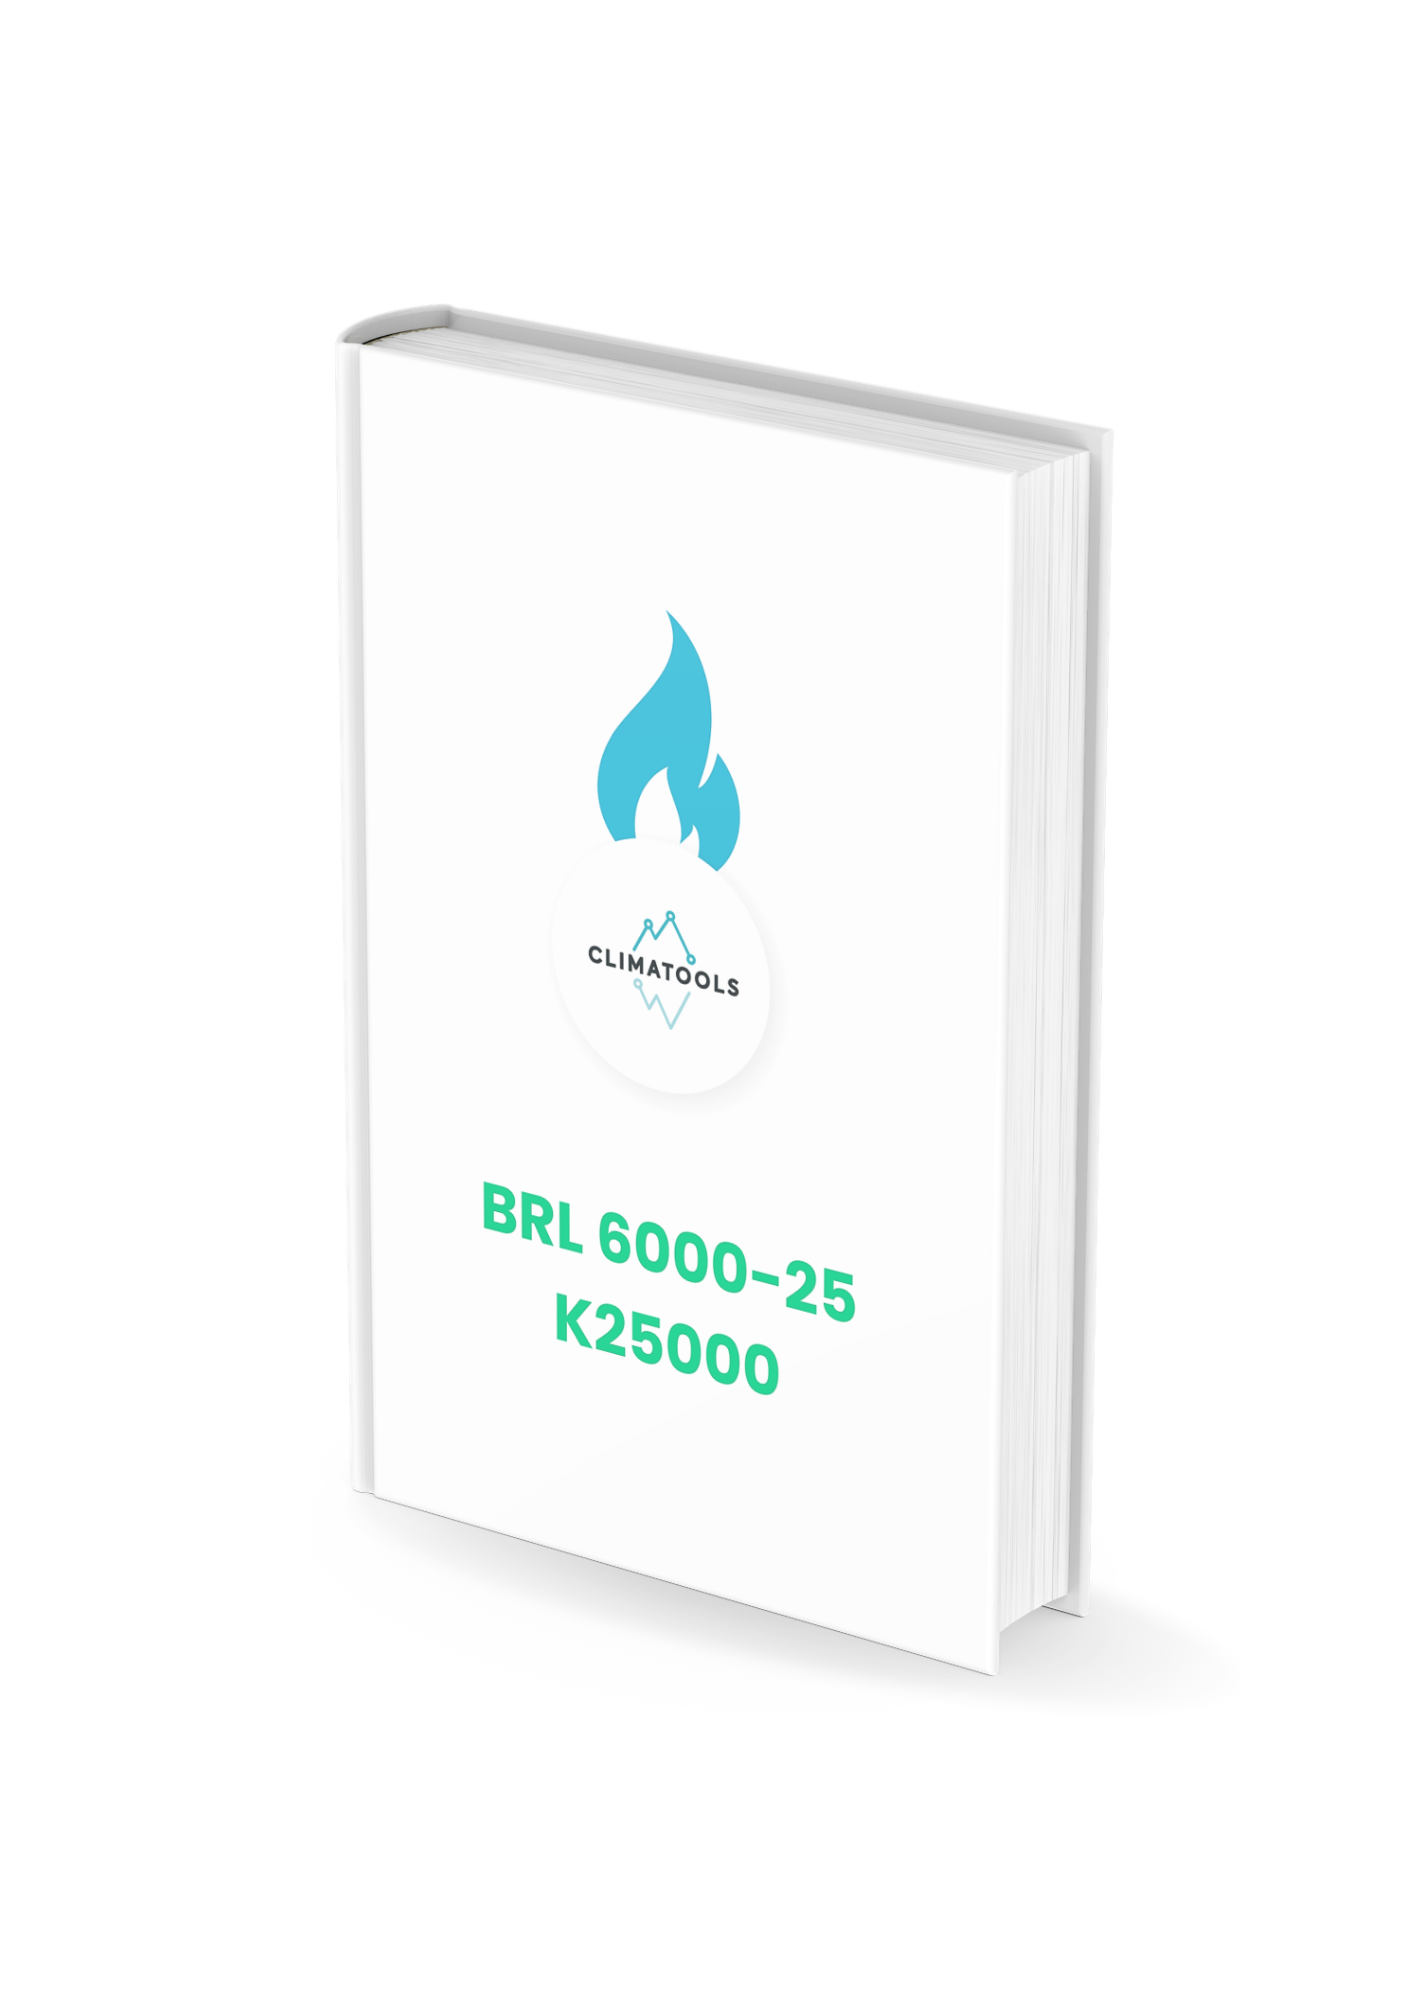 BRL 6000-25 bedrijfscertificering